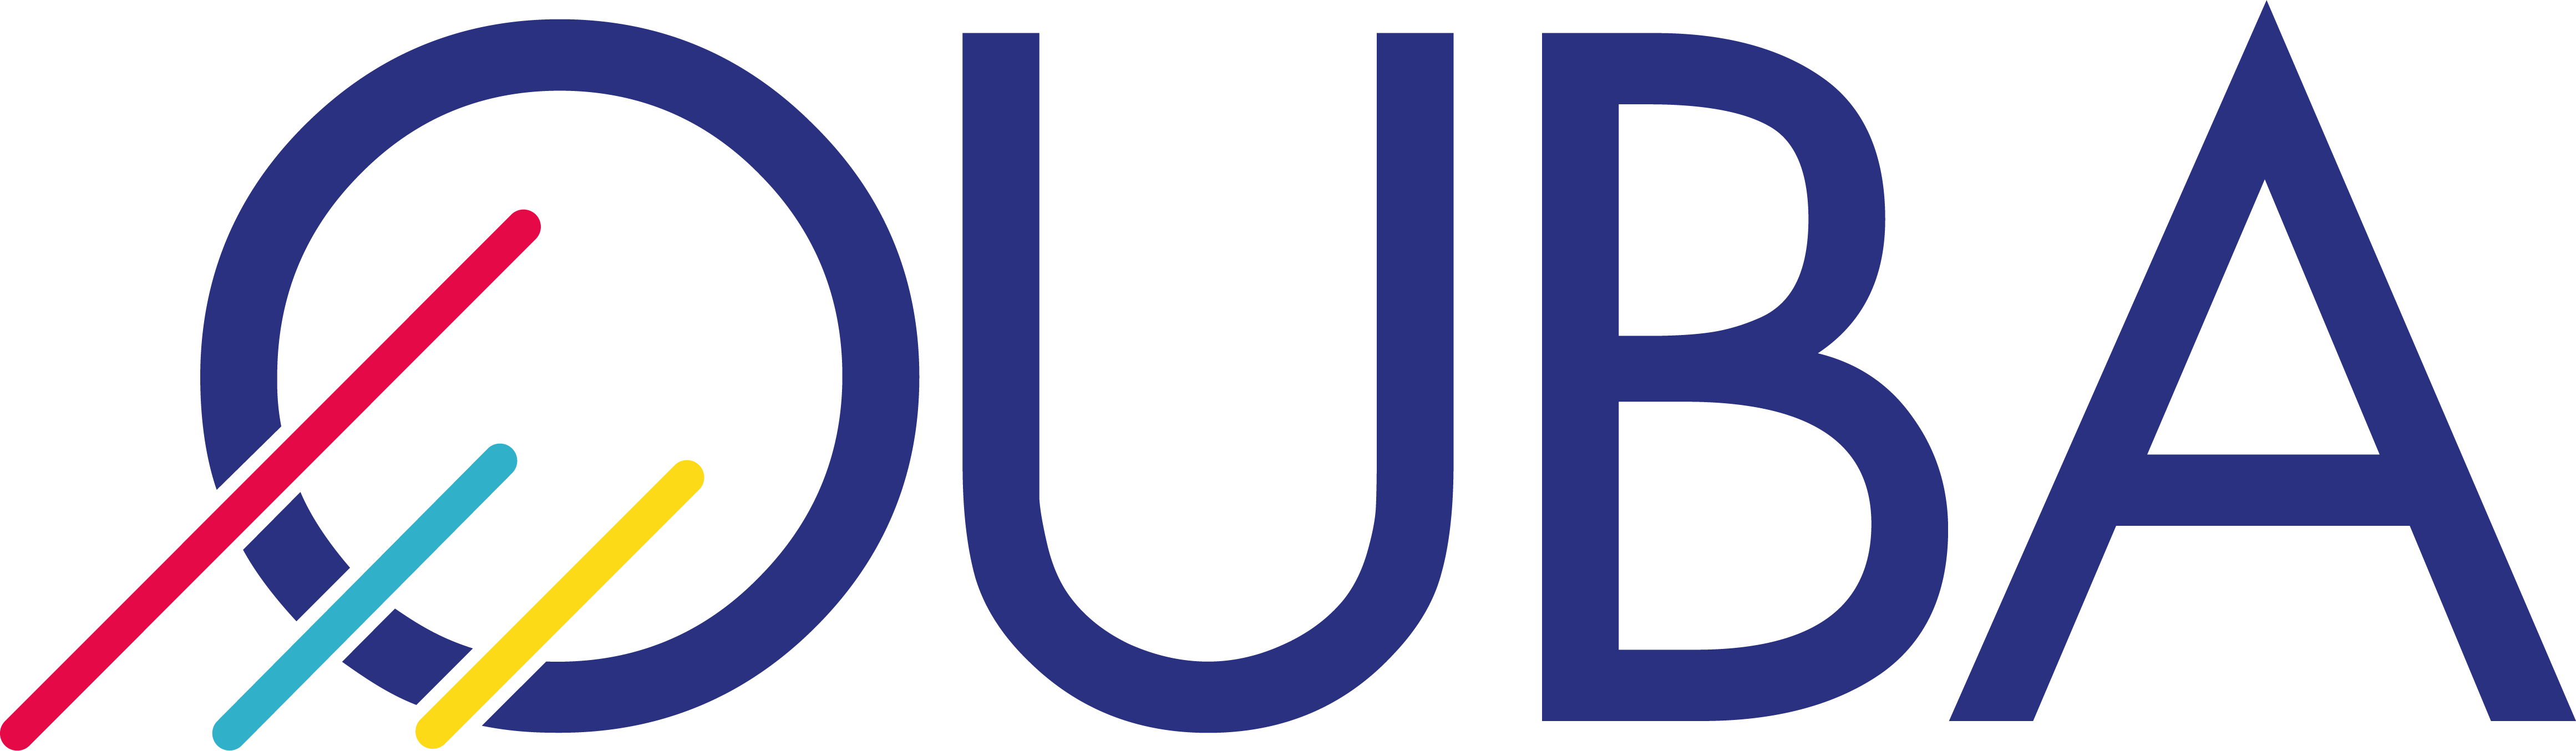 OUBA, logo membre Bel Air Camp